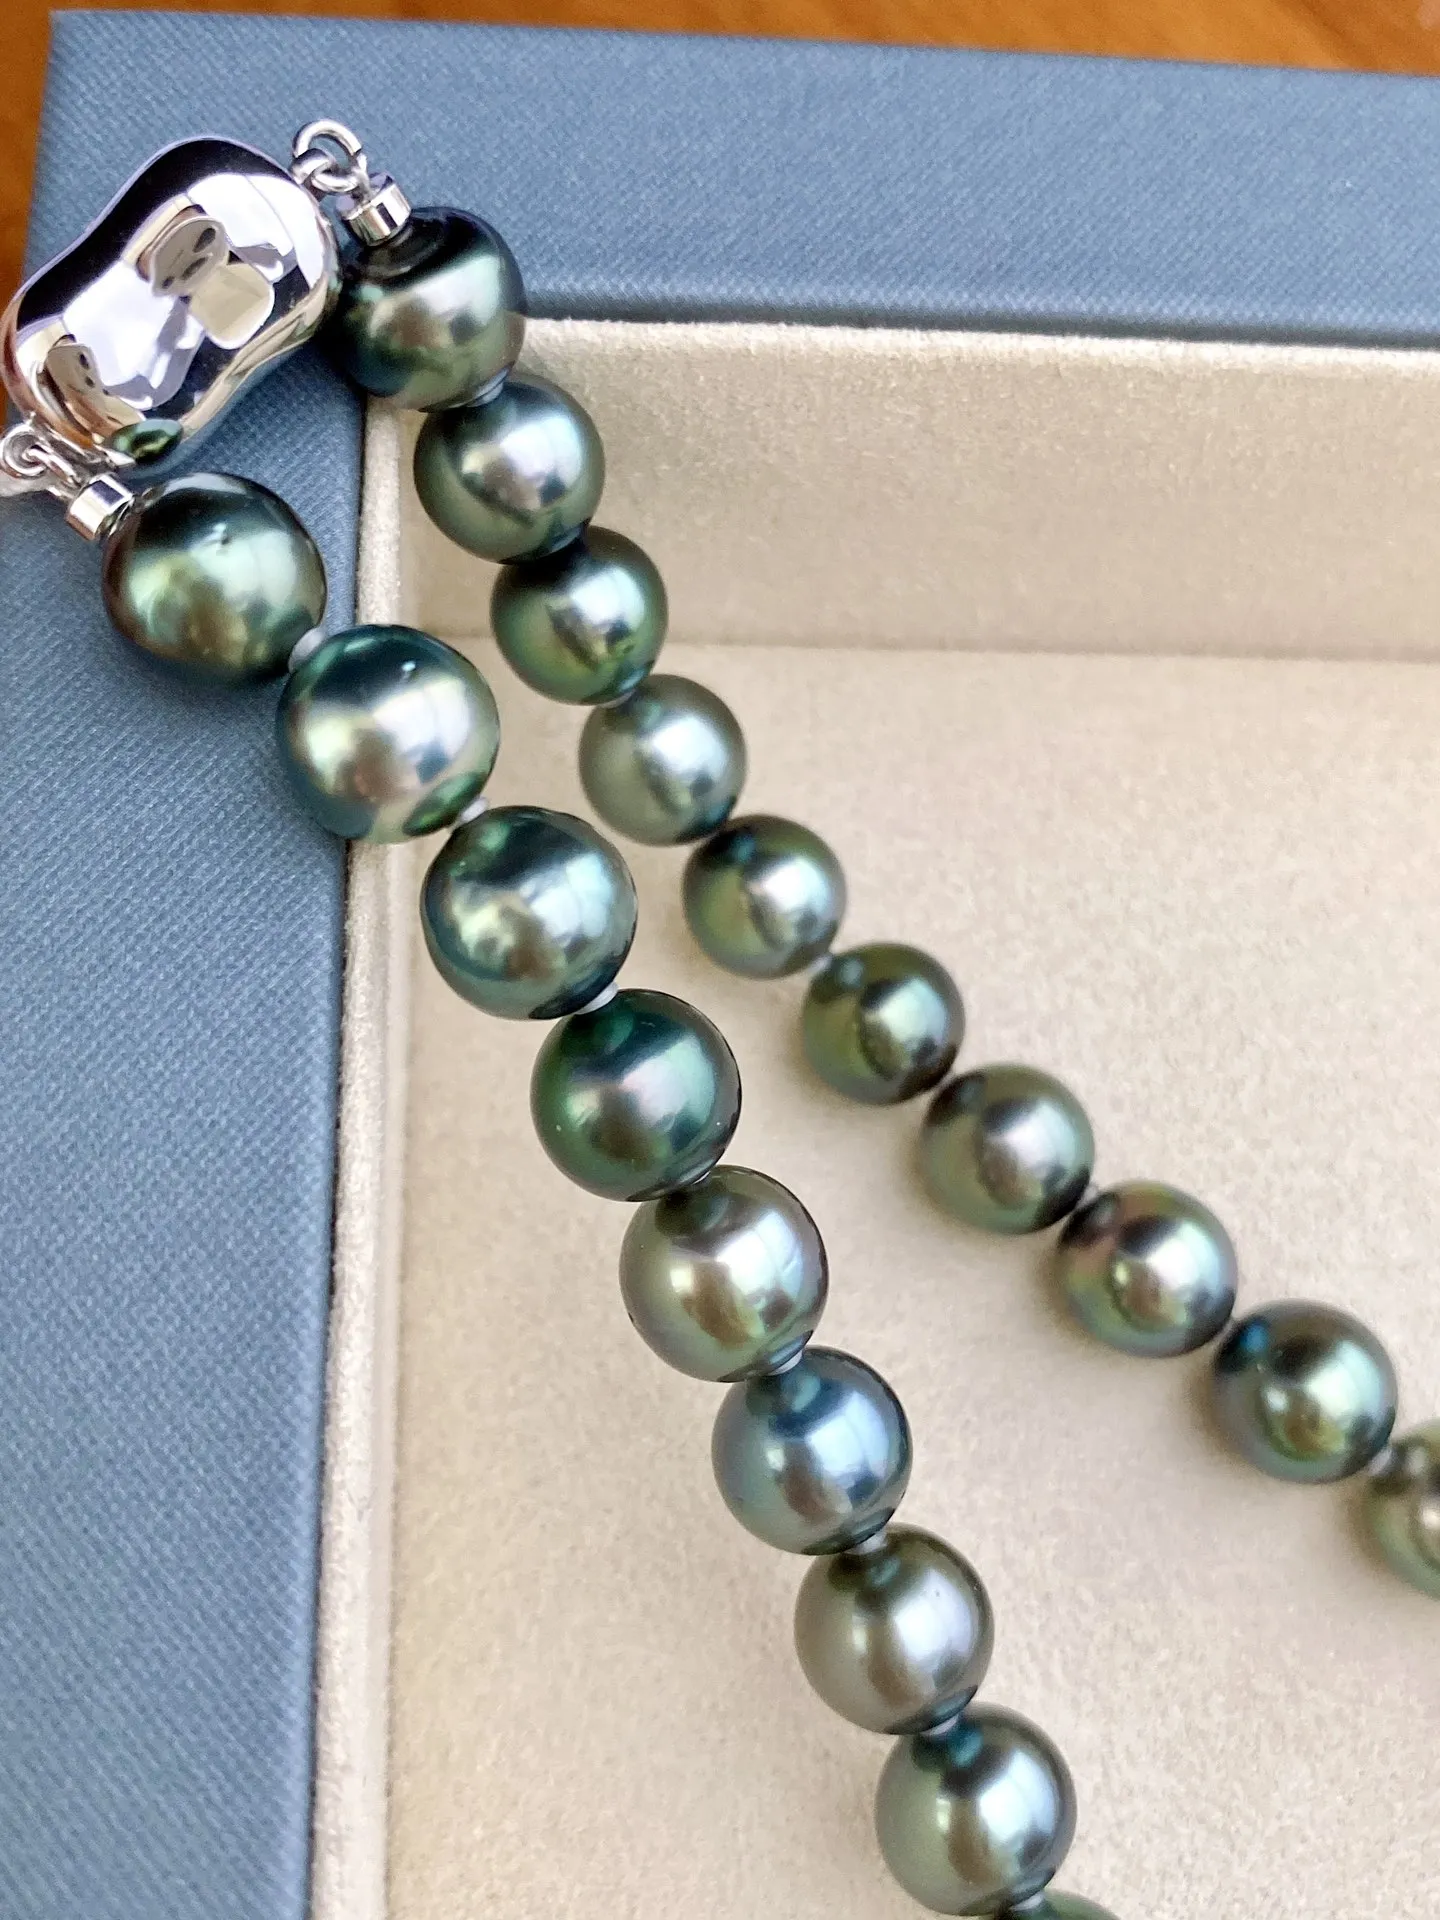 一套孔雀绿项链，颜色漂亮珠光美，规格：8.9-11.1mm，黄金尺寸，耳钉：11-12mm，上身效果赞！同款随机发